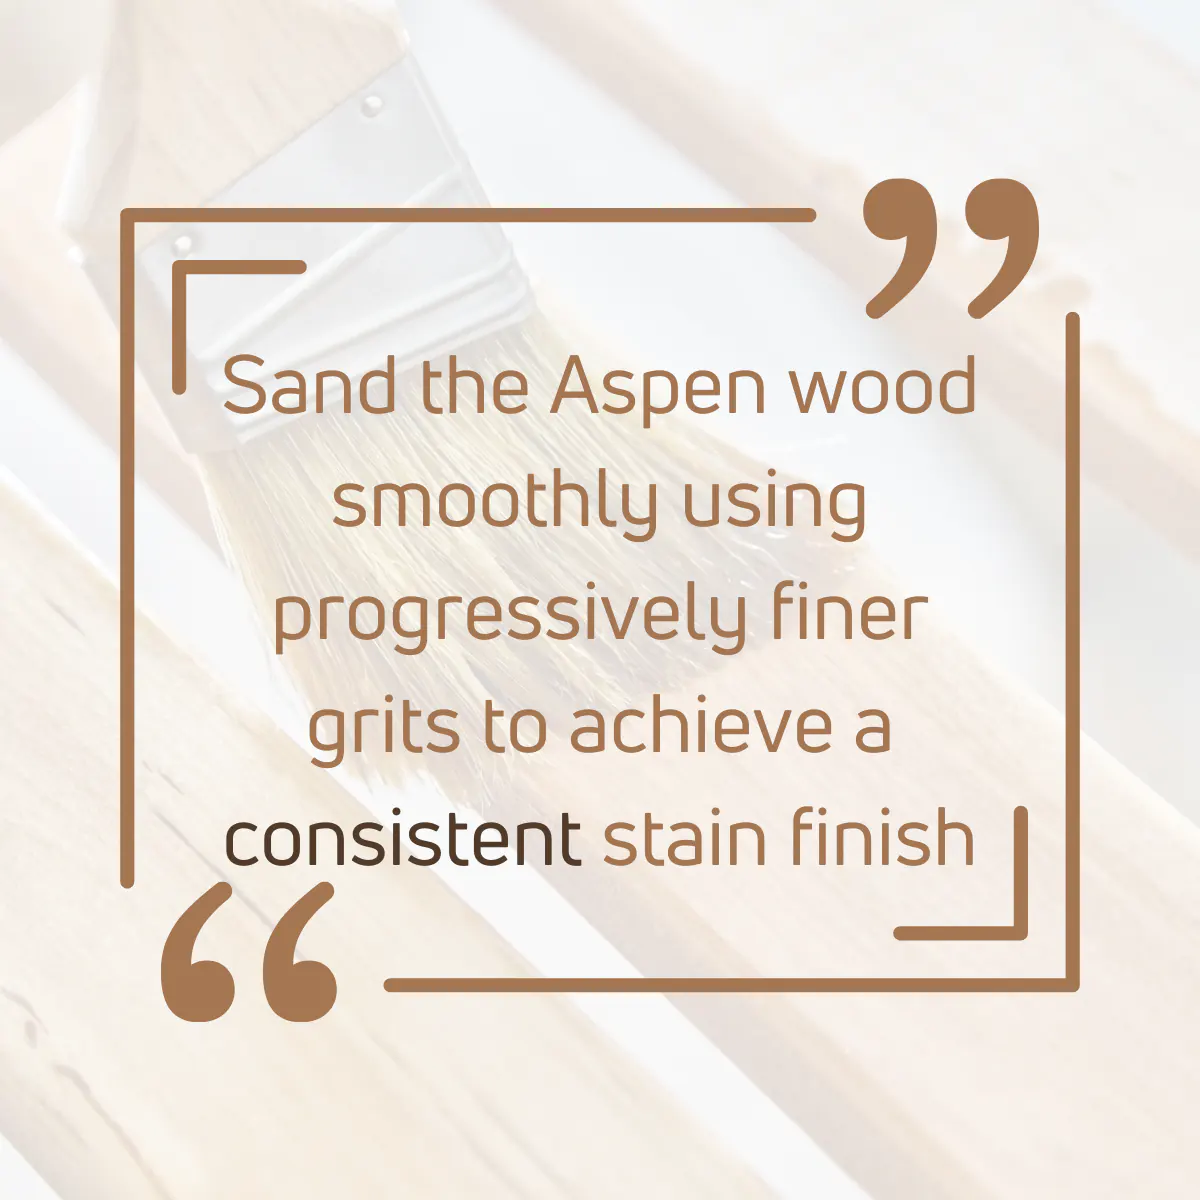 Tip for staining aspen